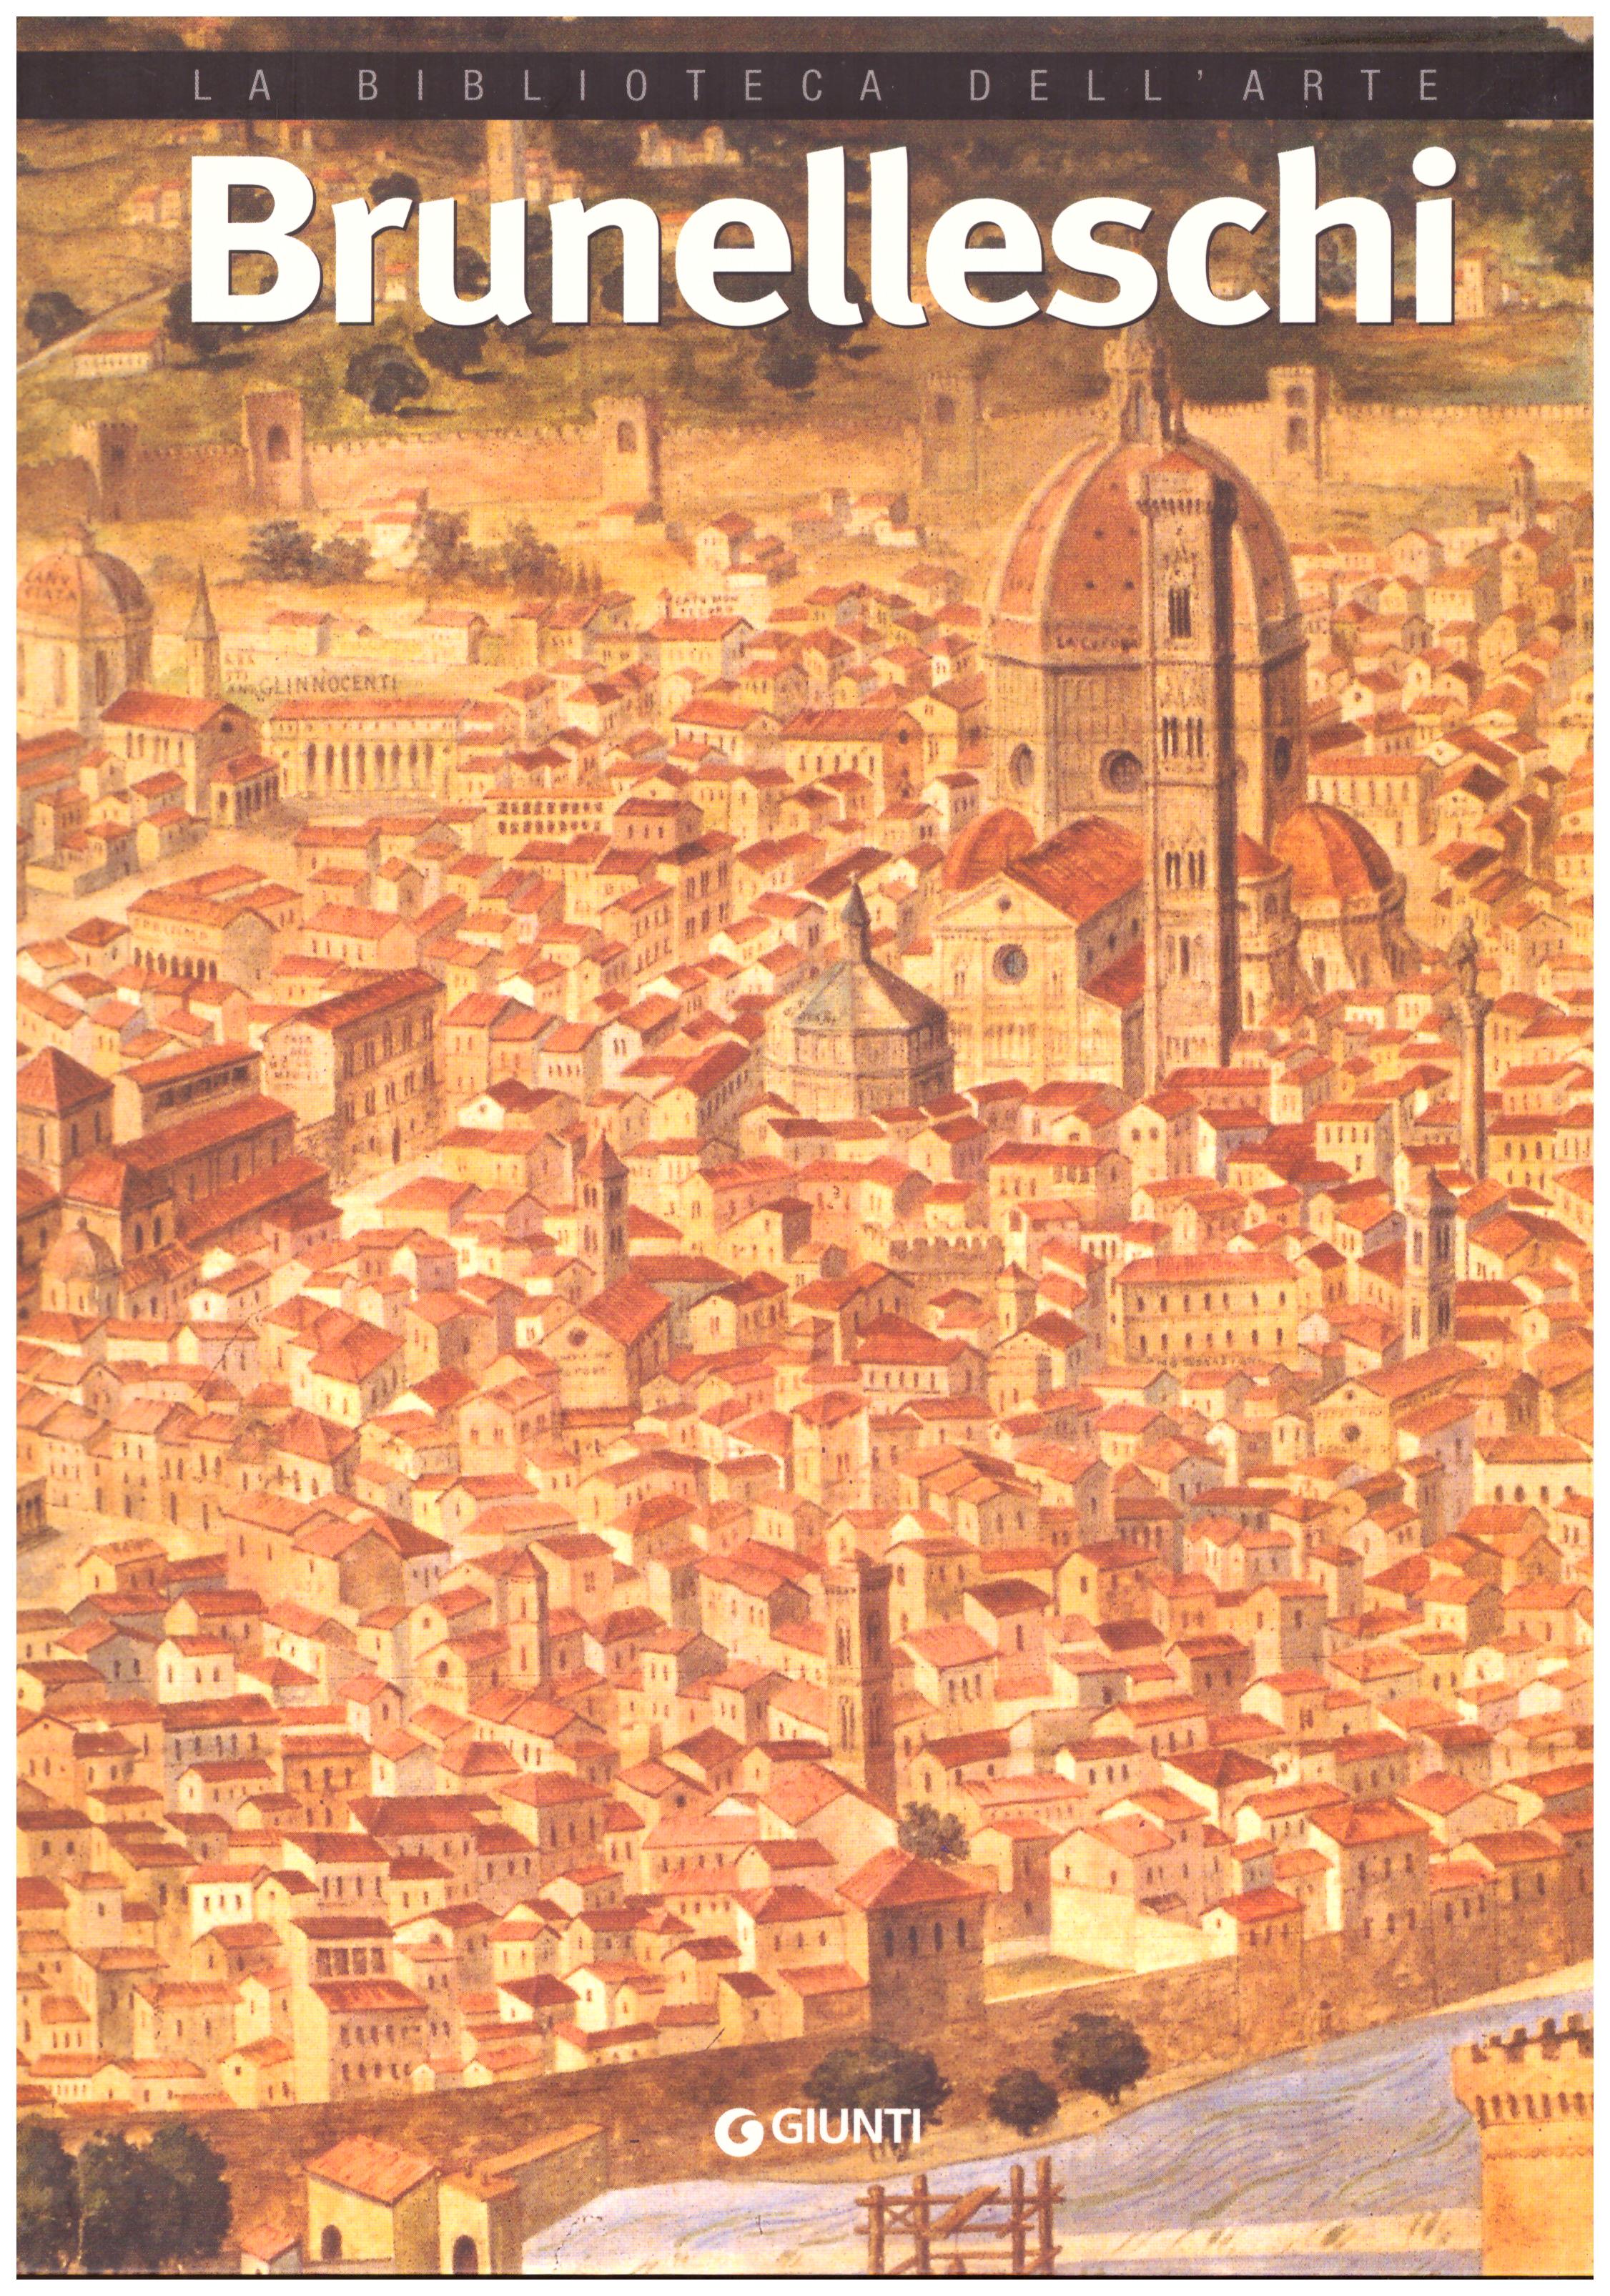 Titolo: La biblioteca dell'arte, Brunelleschi     Autore: AA.VV.      Editore: Giunti